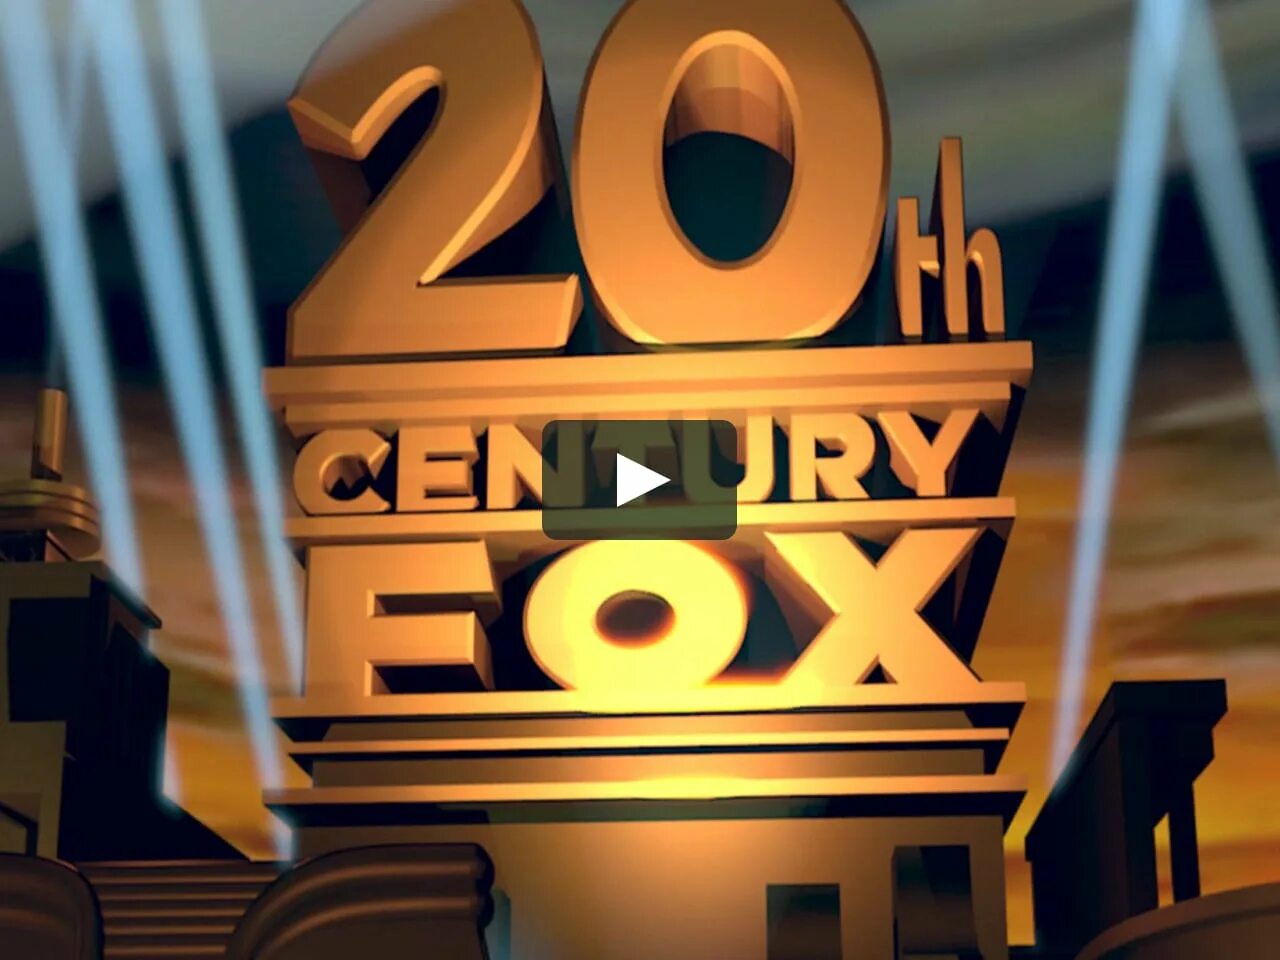 20 Век Фокс. 20 Век Фокс Дисней Пиксар. 20 Лет Фокс. 20rh Century Fox 1997. Заставка fox